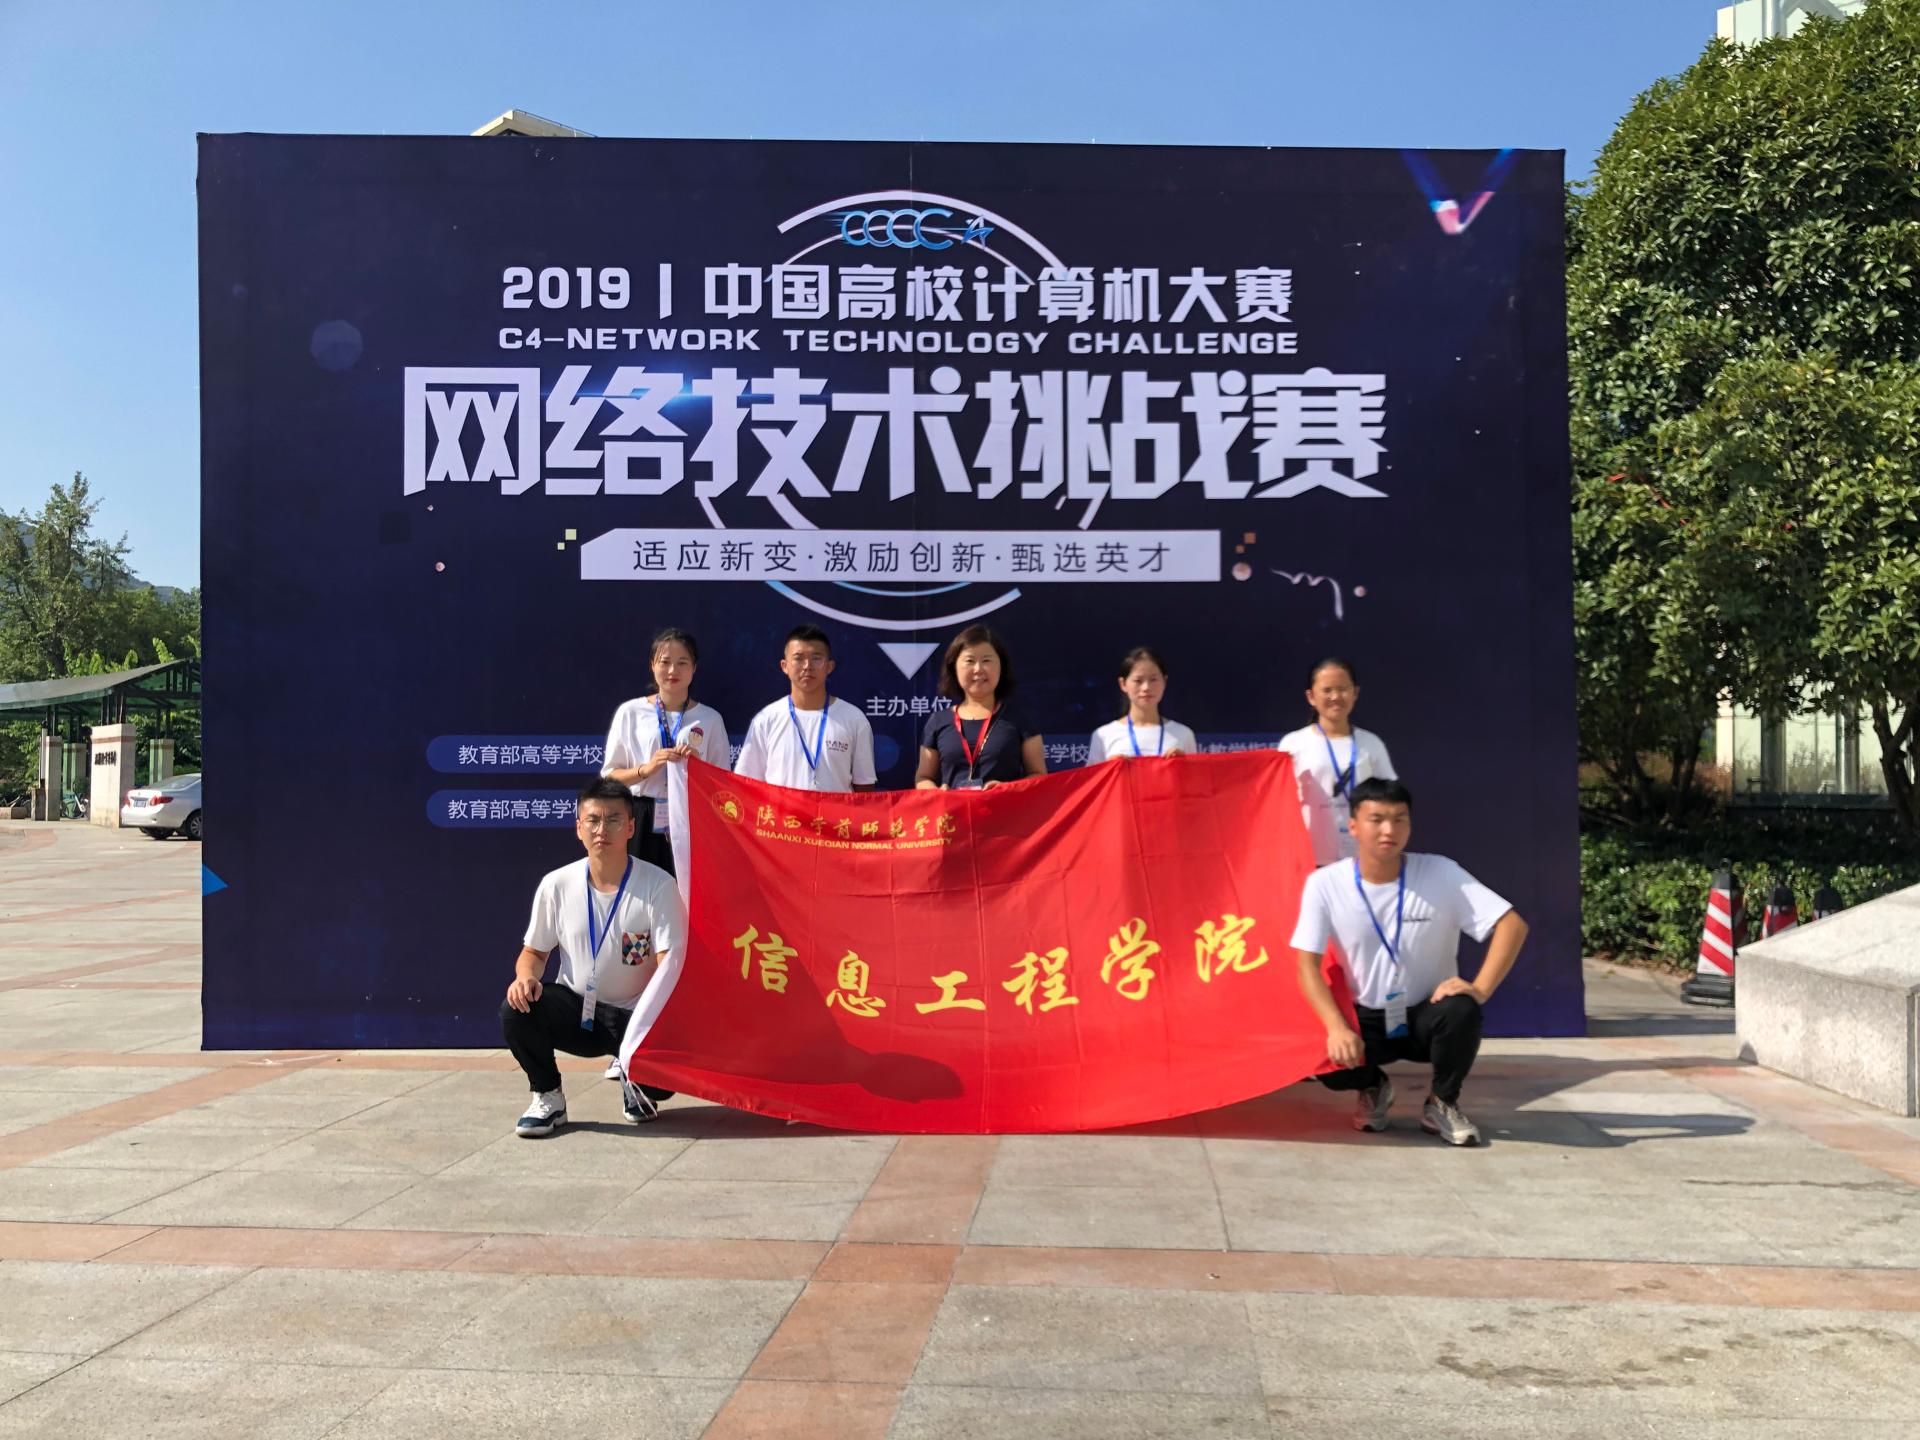 信息工程学院学生喜获"中国高校计算机大赛——网络技术挑战赛"二等奖